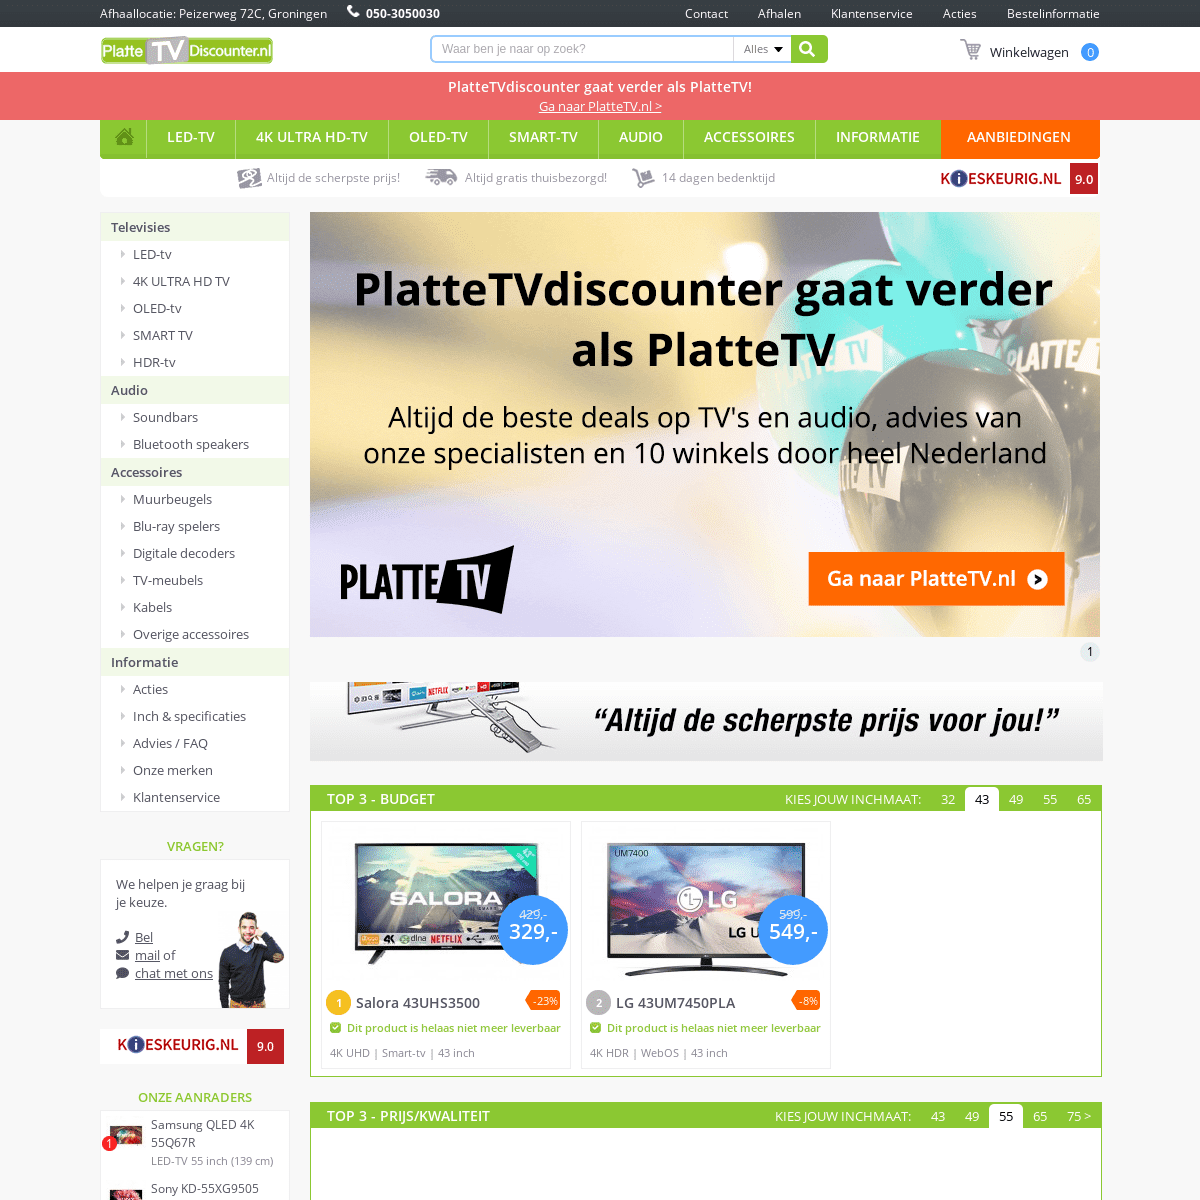 A complete backup of https://plattetvdiscounter.nl